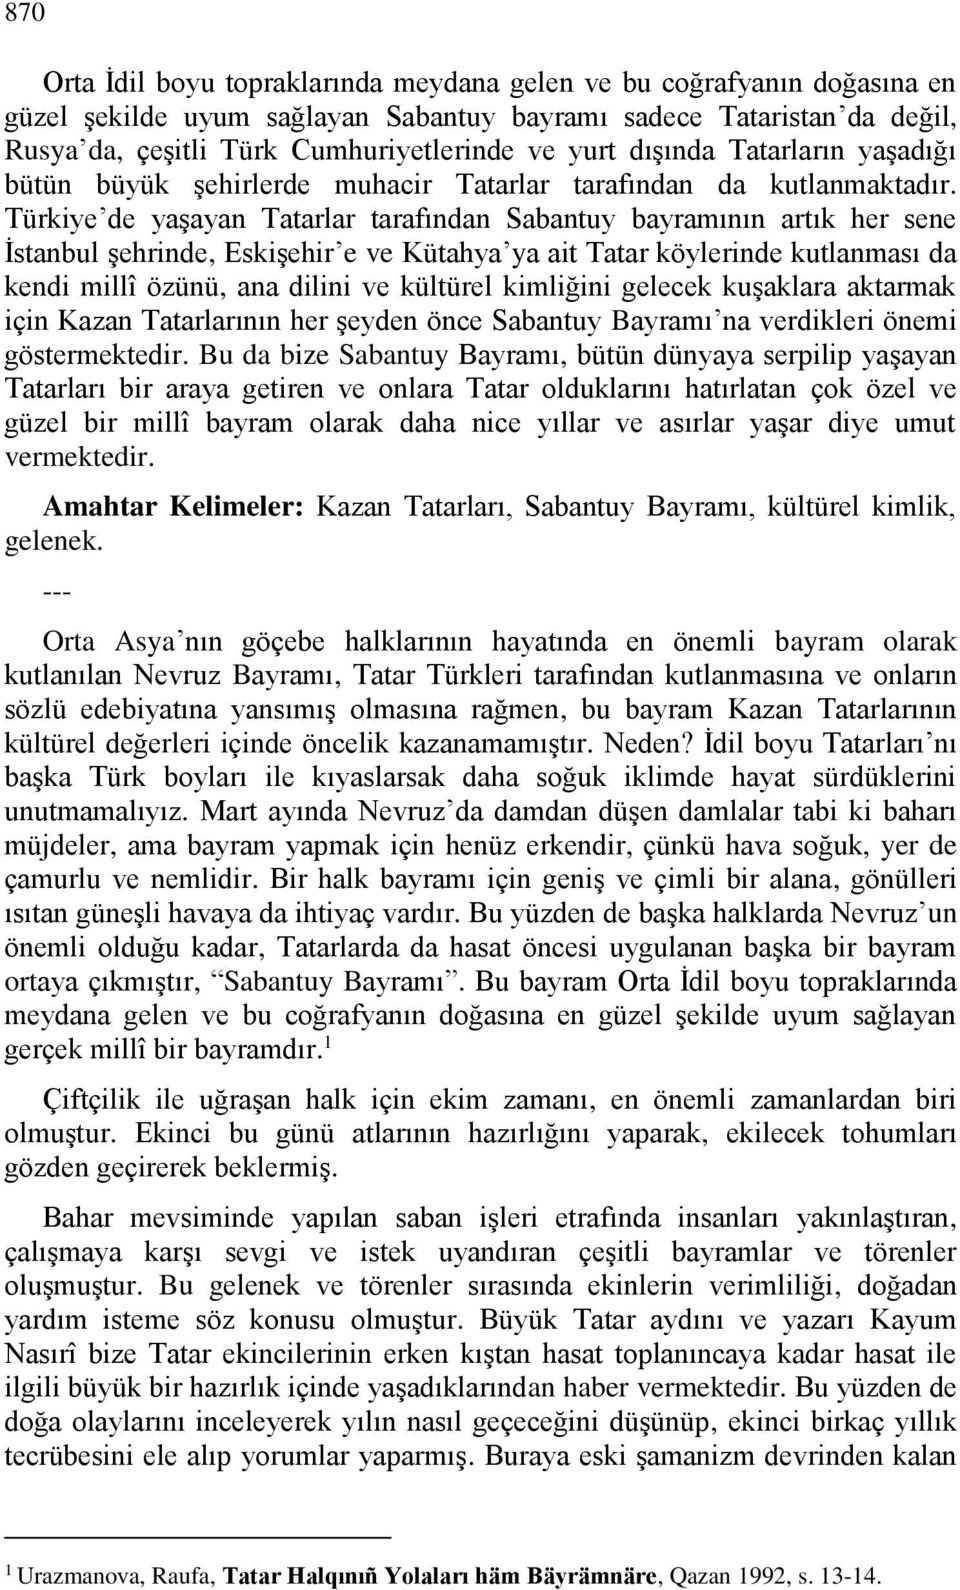 Türkiye de yaşayan Tatarlar tarafından Sabantuy bayramının artık her sene İstanbul şehrinde, Eskişehir e ve Kütahya ya ait Tatar köylerinde kutlanması da kendi millî özünü, ana dilini ve kültürel